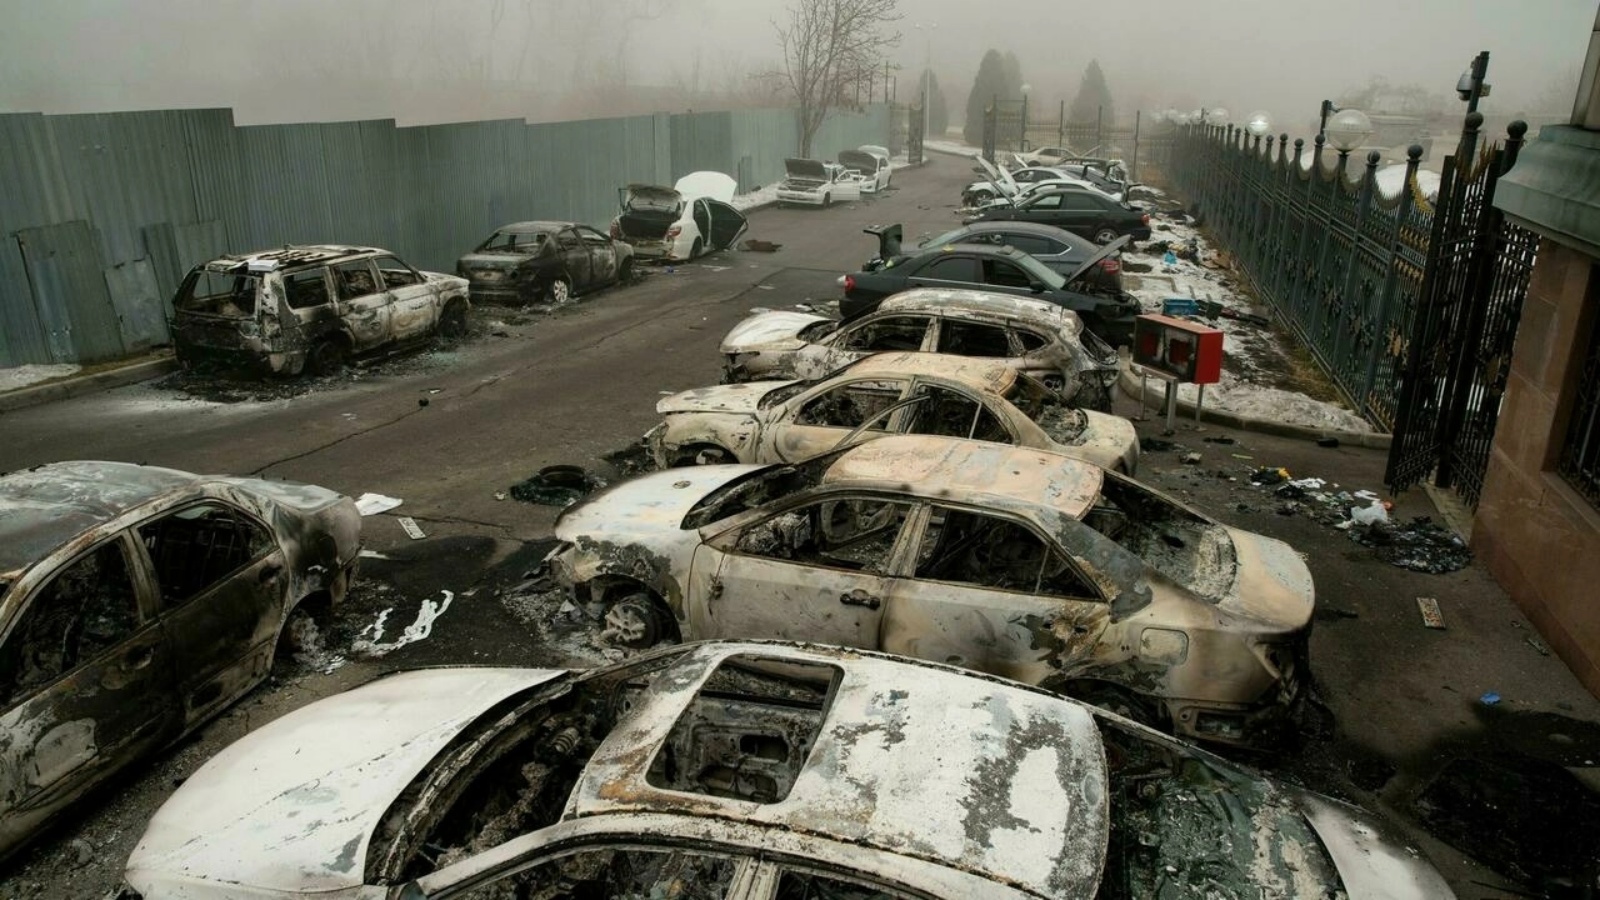 سيارات محترقة في مرآب في ألماتي العاصمة الاقتصادية لكازاخستان في 06 كانون الثاني/يناير 2022 